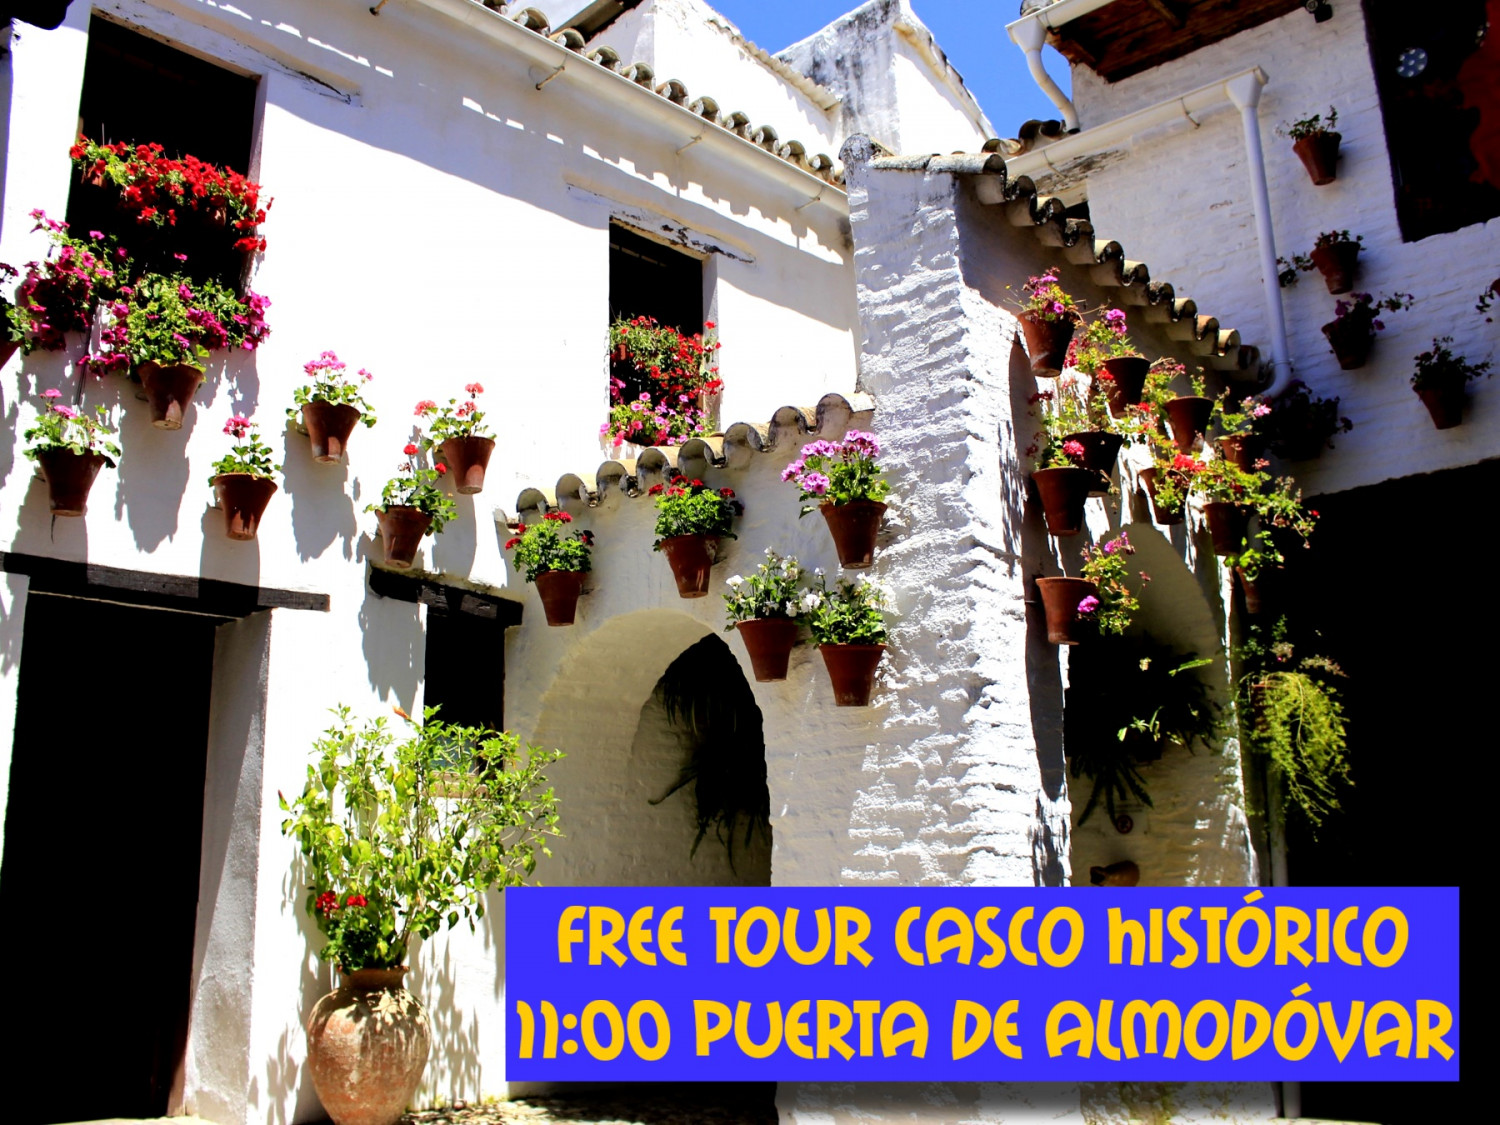 Free Tour del Casco Historico